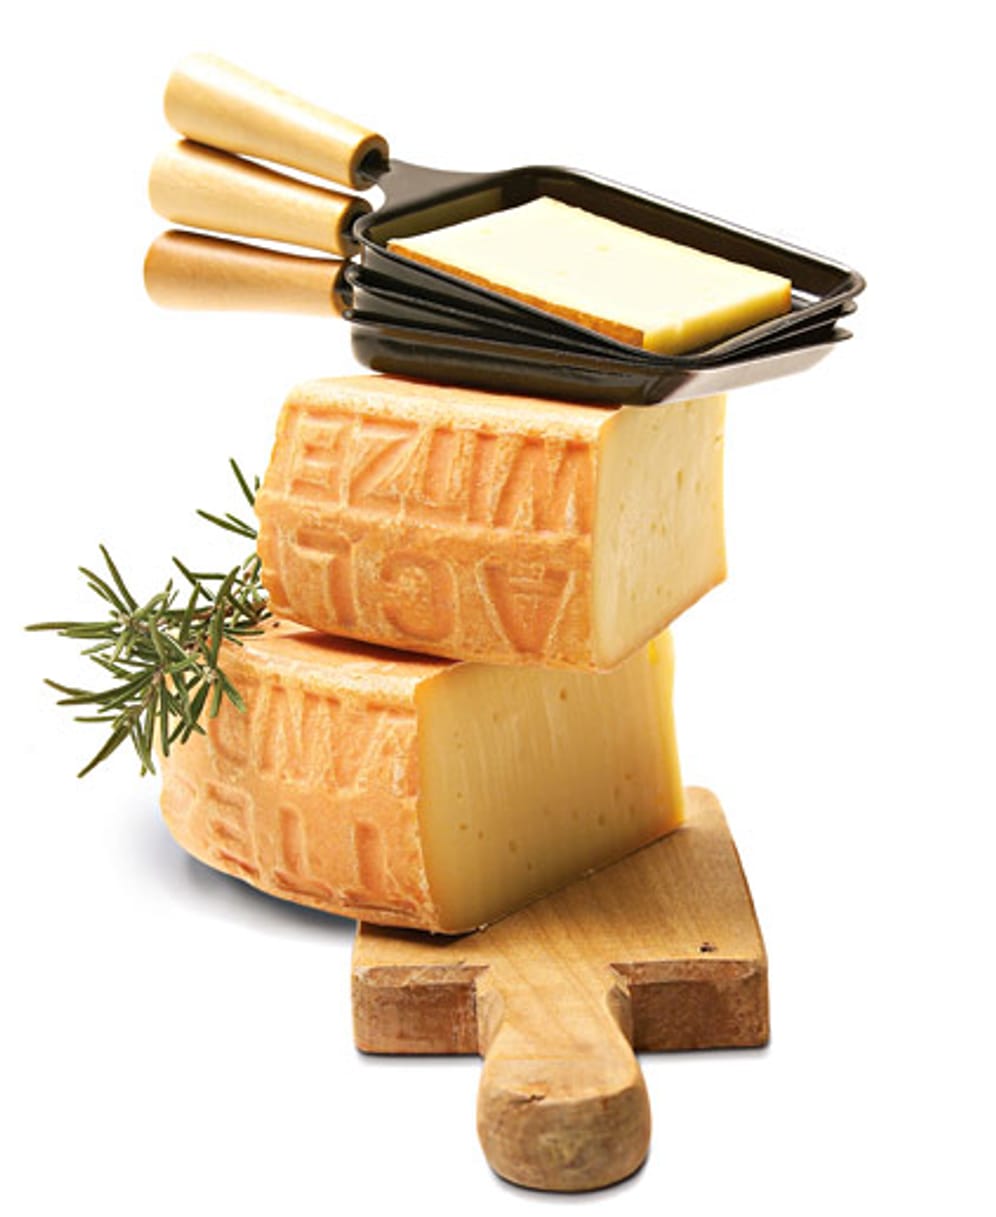 Käse spielt die Hauptrolle beim Raclette